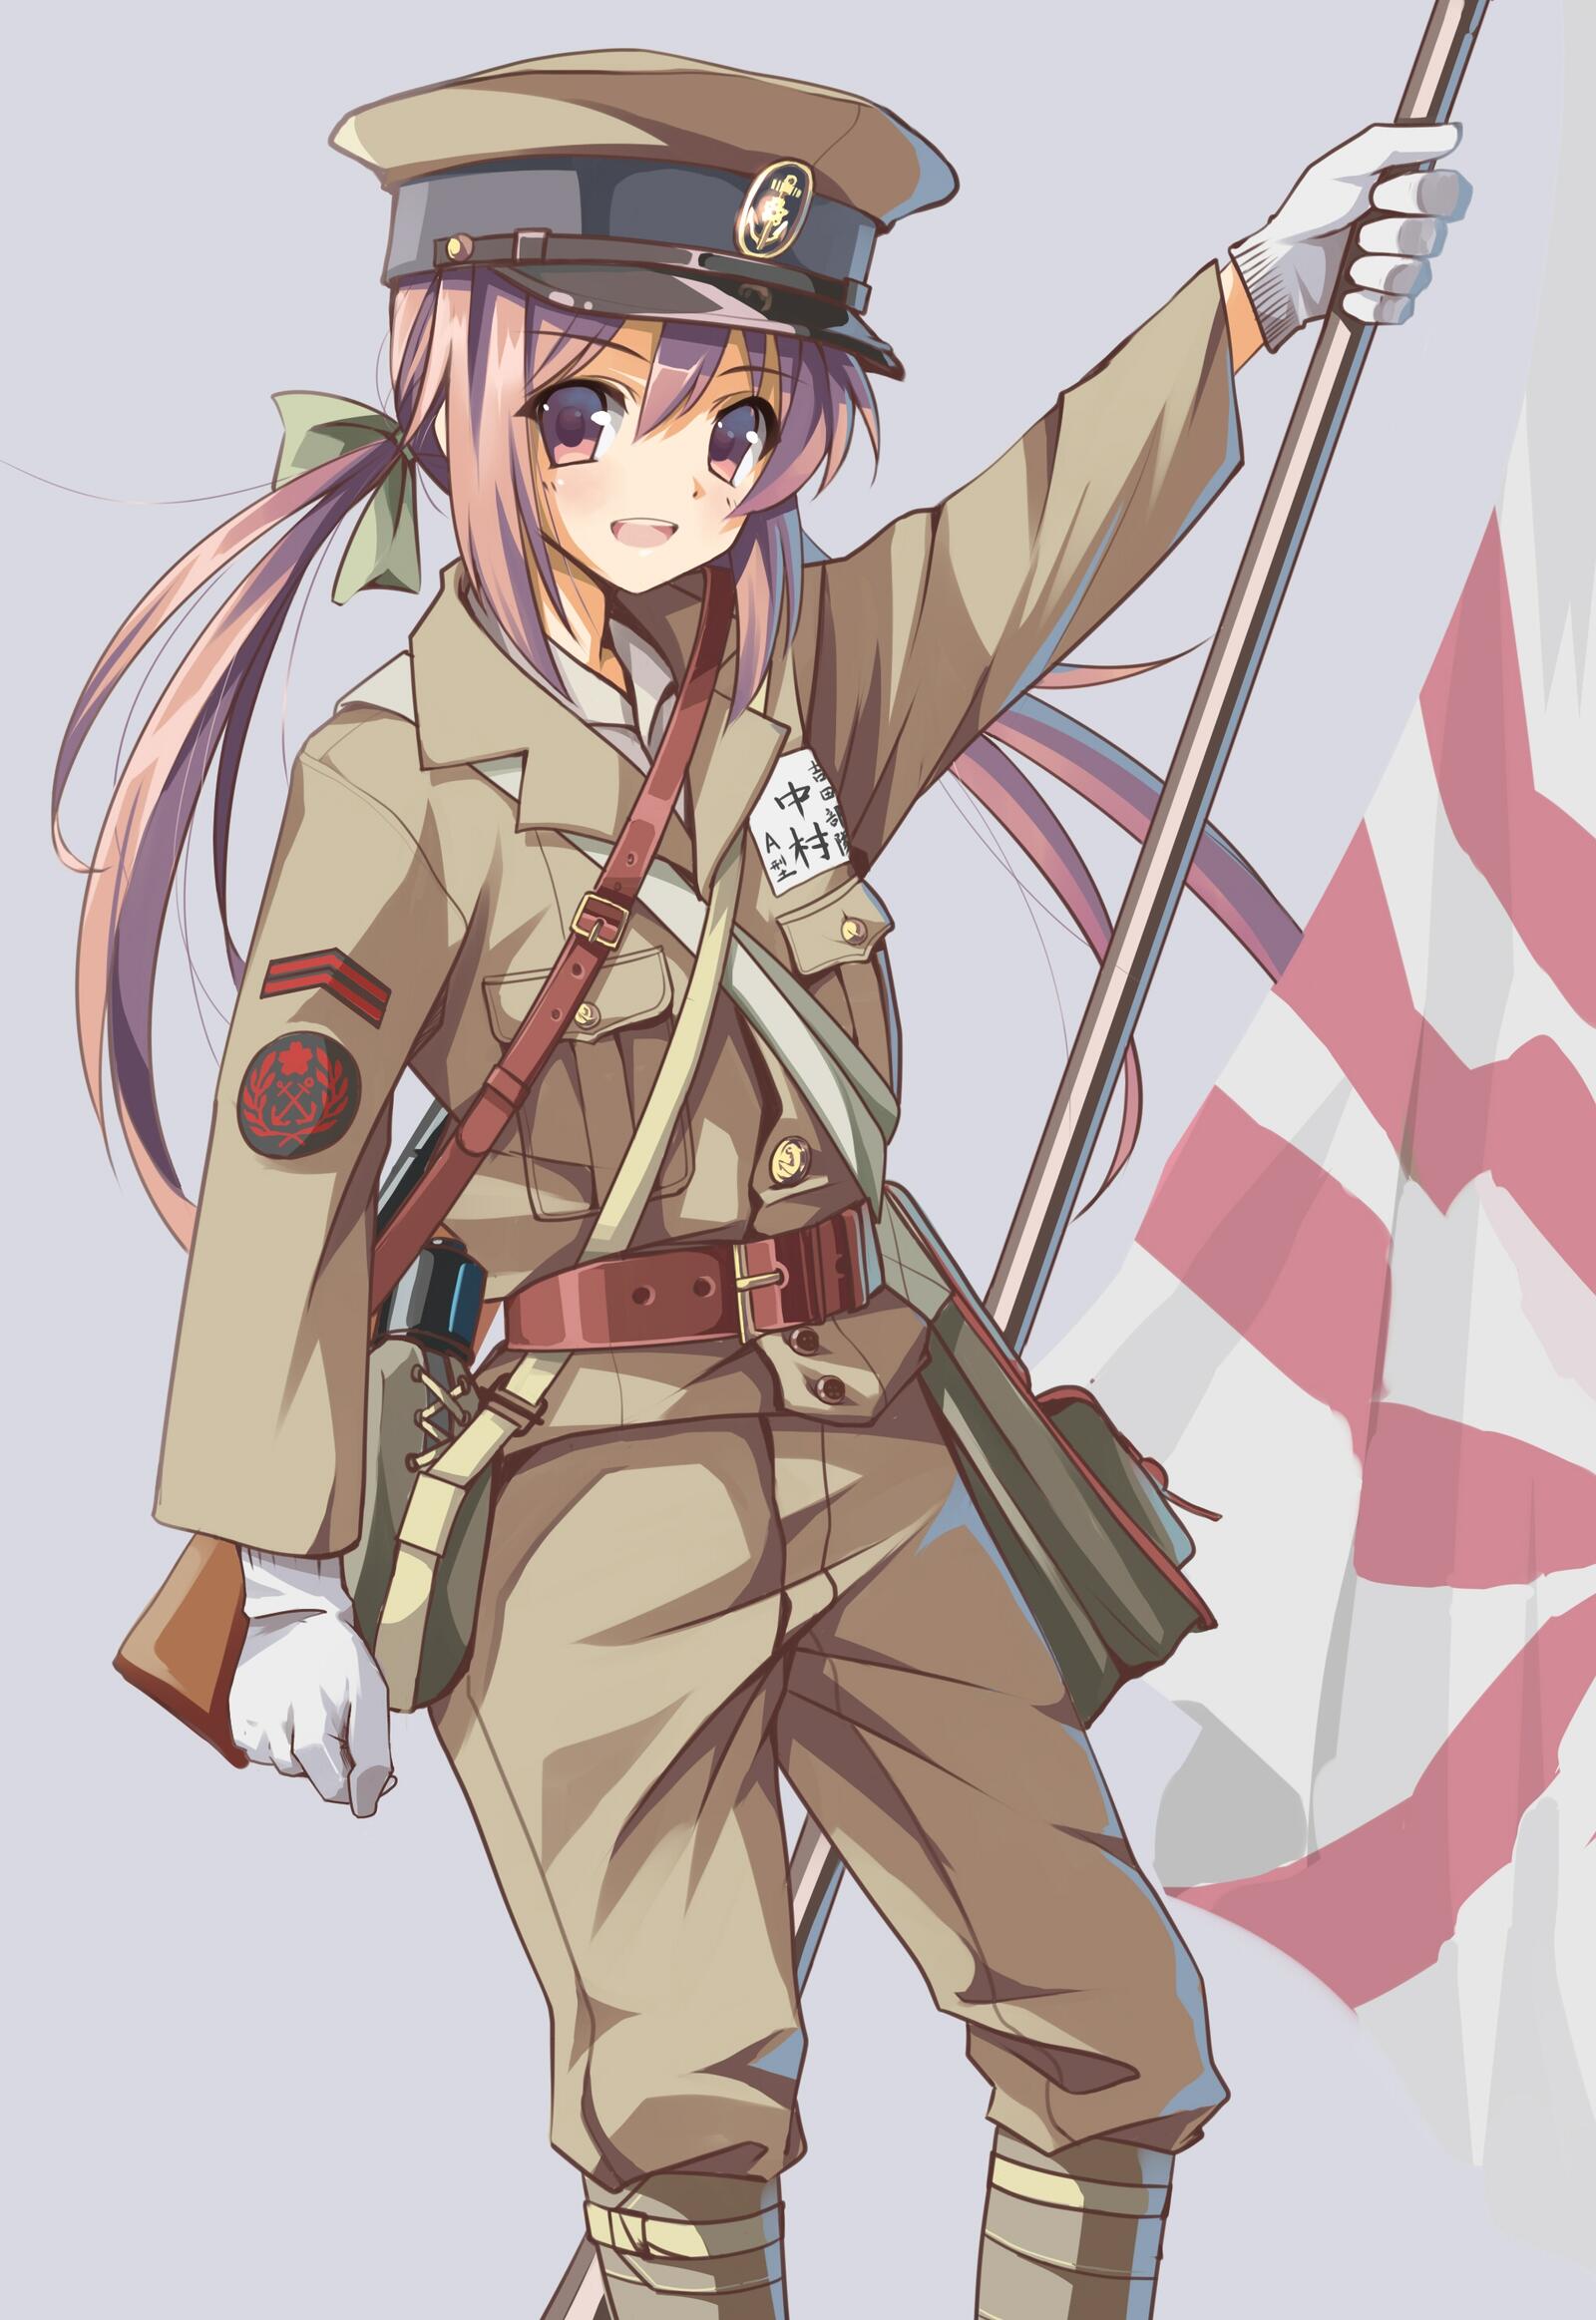 Wallpapers wallpaper anime girl military uniform gloves on the desktop